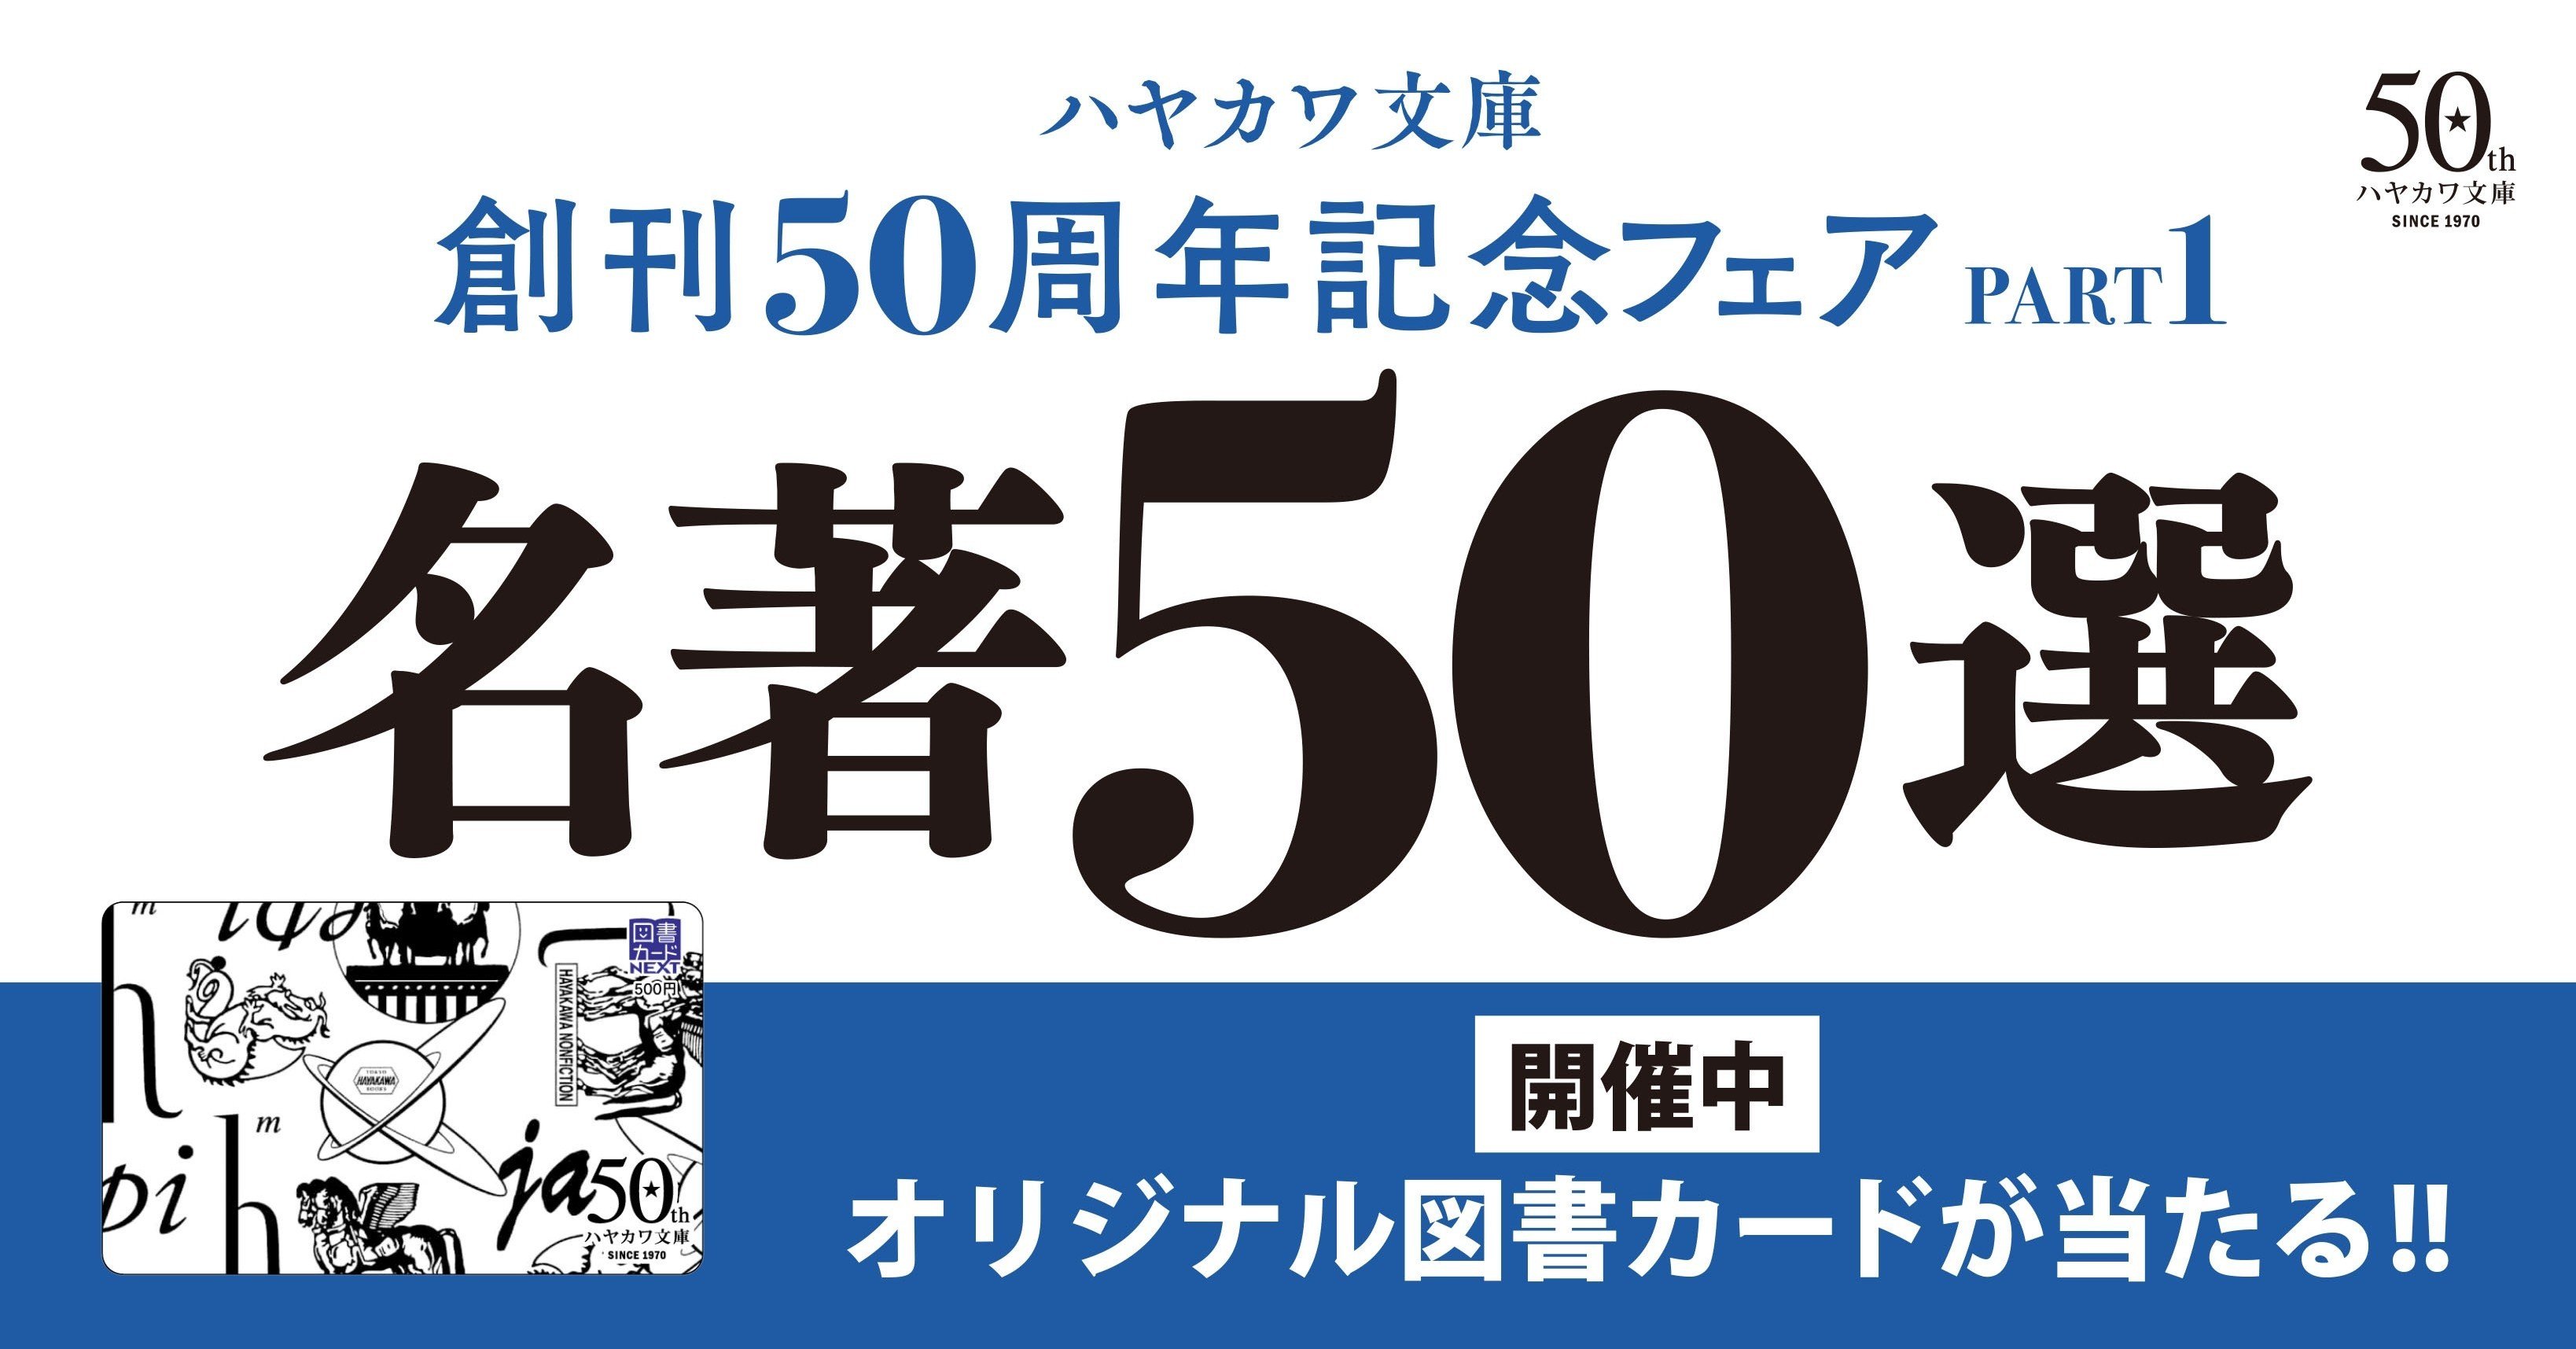 開催中 毎月100名様にオリジナル図書カードが当たる記念イヤーフェア第1弾 文庫創刊50周年記念フェアpart1 Hayakawa Books Magazines B